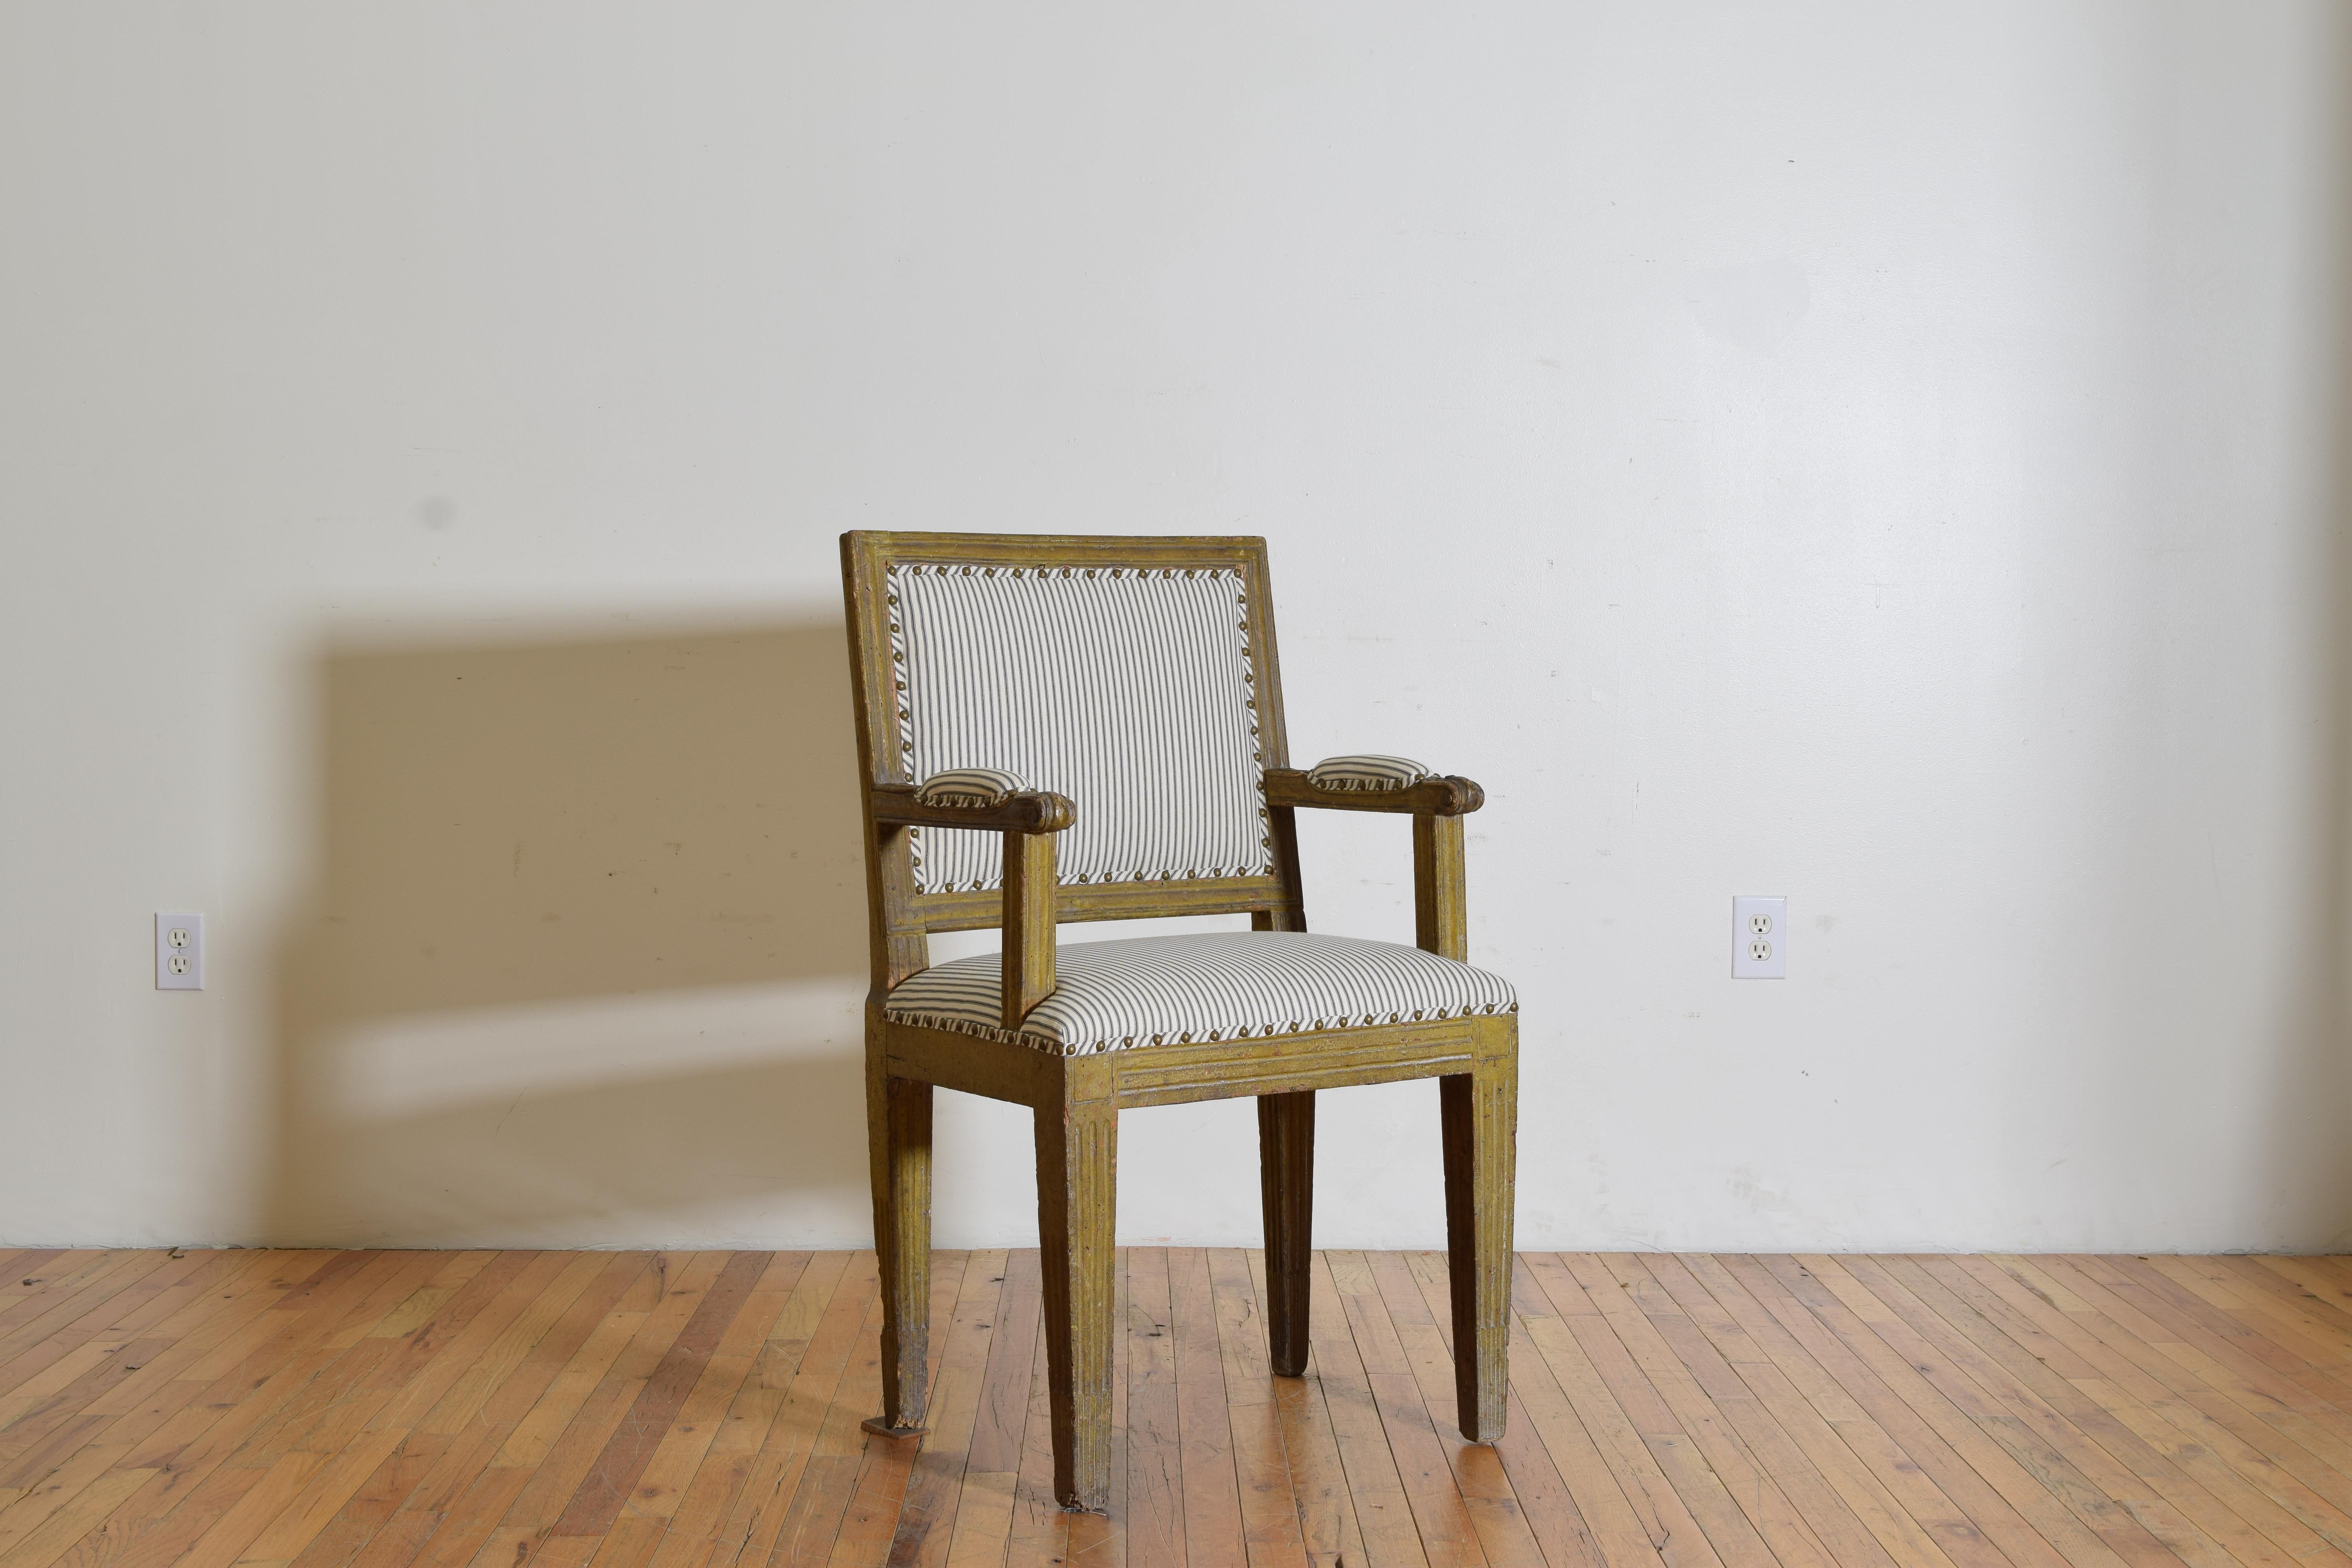 Dieser einzigartige Stuhl hat eine quadratische, gepolsterte Rückenlehne mit geschnitzten Leisten, gerade Armlehnen mit gepolsterten Ellbogenpads und eine enge Sitzfläche über einem quadratischen Rahmen, der auf quadratischen, spitz zulaufenden